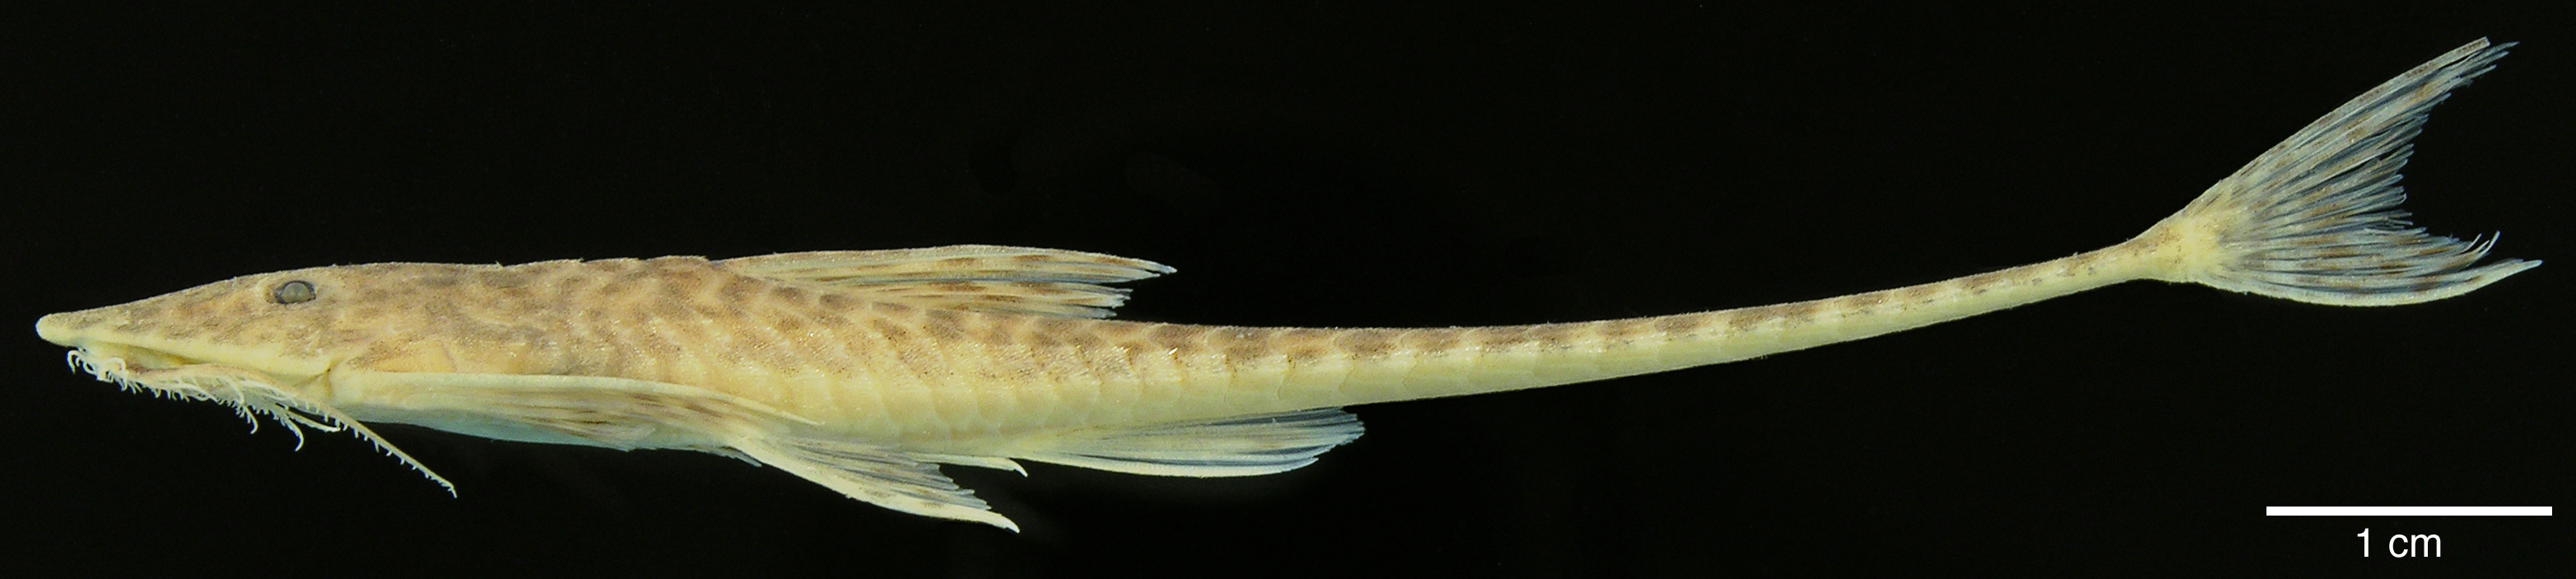 Paratype of <em>Apistoloricaria laani</em>, IAvH-P-10565, 78.5 mm SL (scale bar = 1 cm). Photograph by M. H. Sabaj Pérez